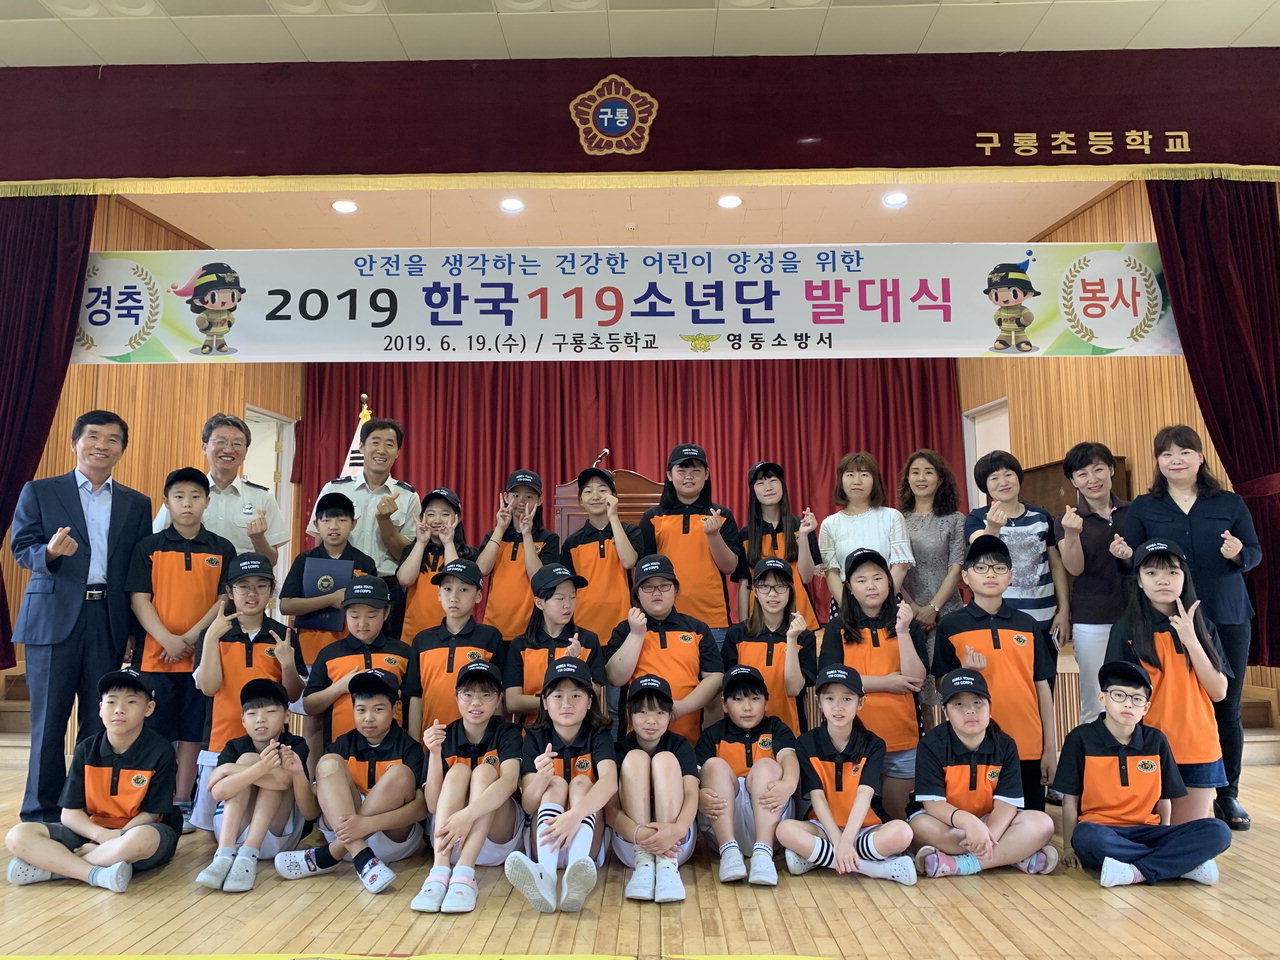 영동소방서는 19일 구룡초등학교에서 소년단원 및 지도교사 등 30여 명이 참석한 가운데 한국119소년단 발대식을 가졌다. / 영동소방서